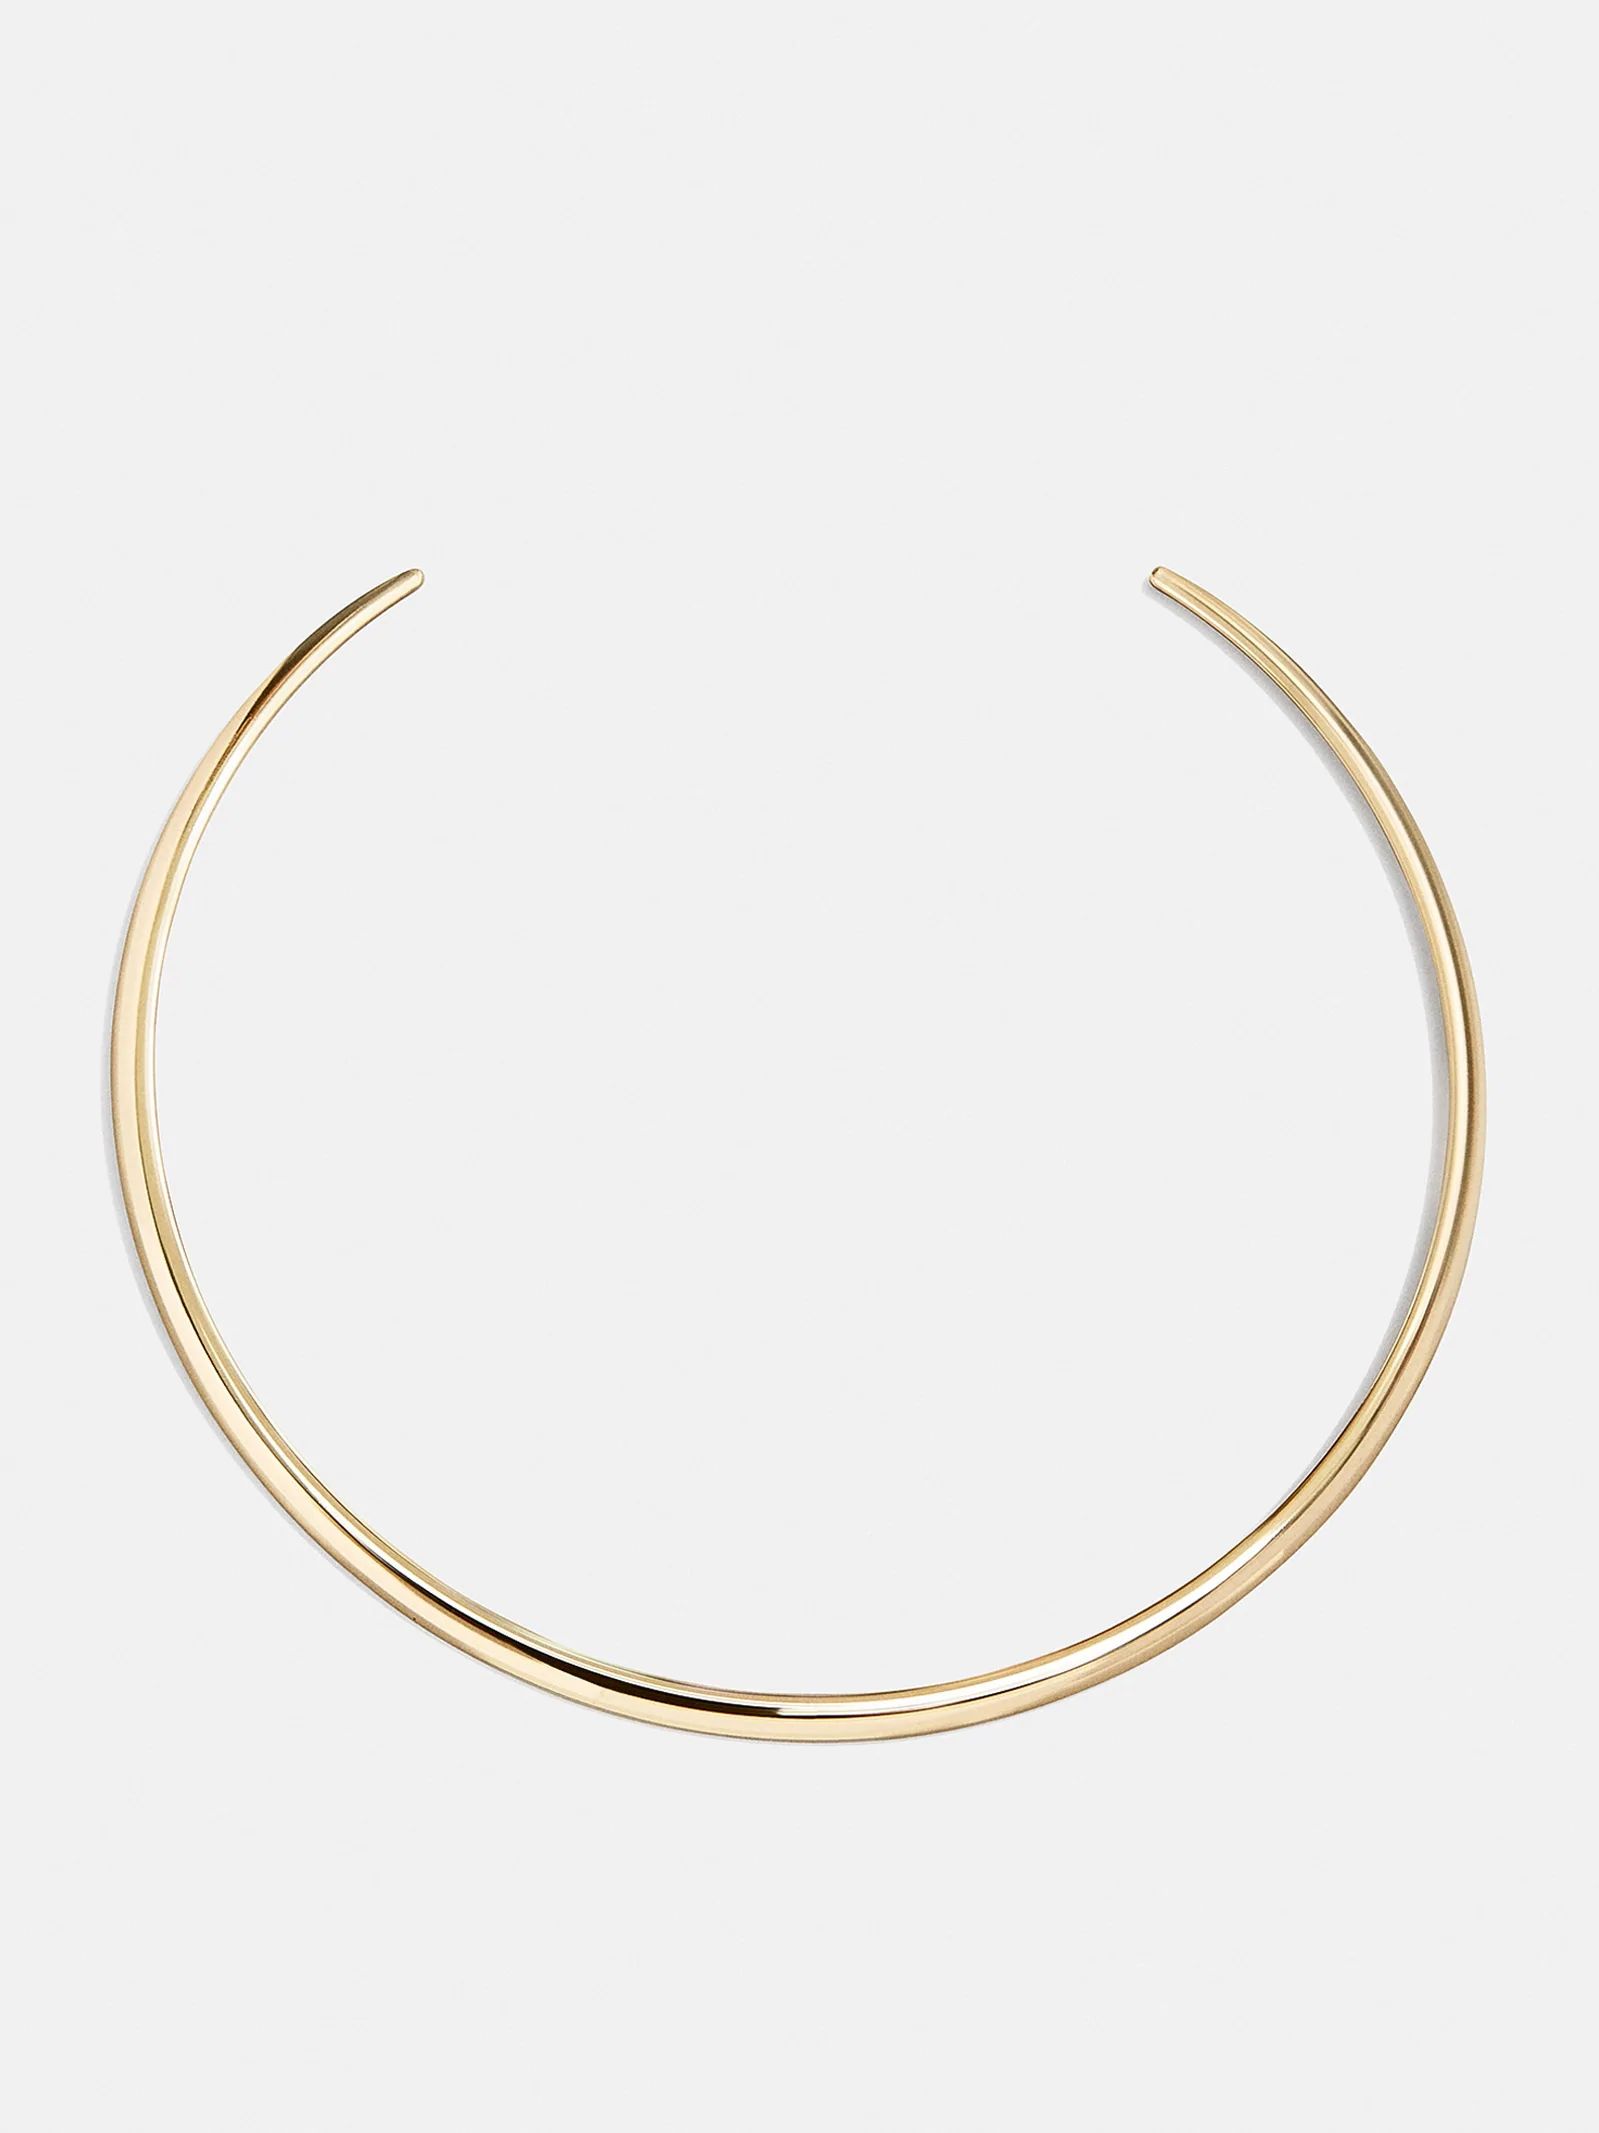 Jameika Collar Necklace | BaubleBar (US)